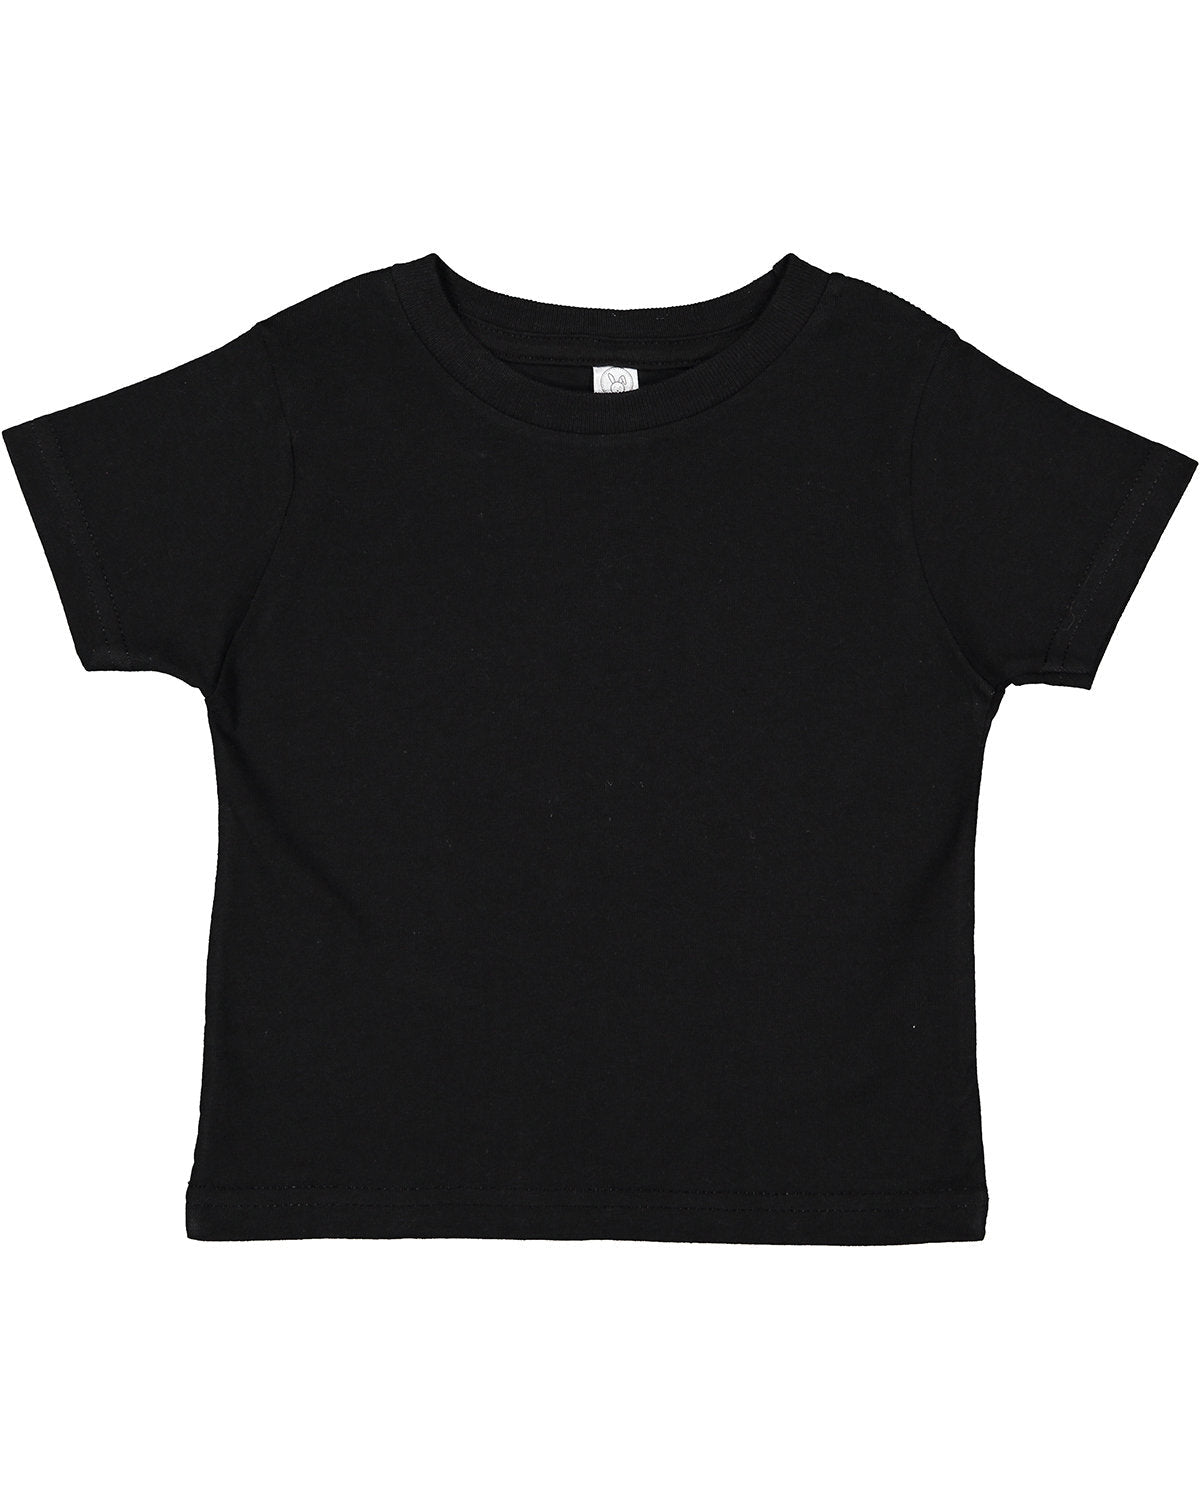 Rabbit Skins Toddler Cotton Jersey T-Shirt 2T / Black